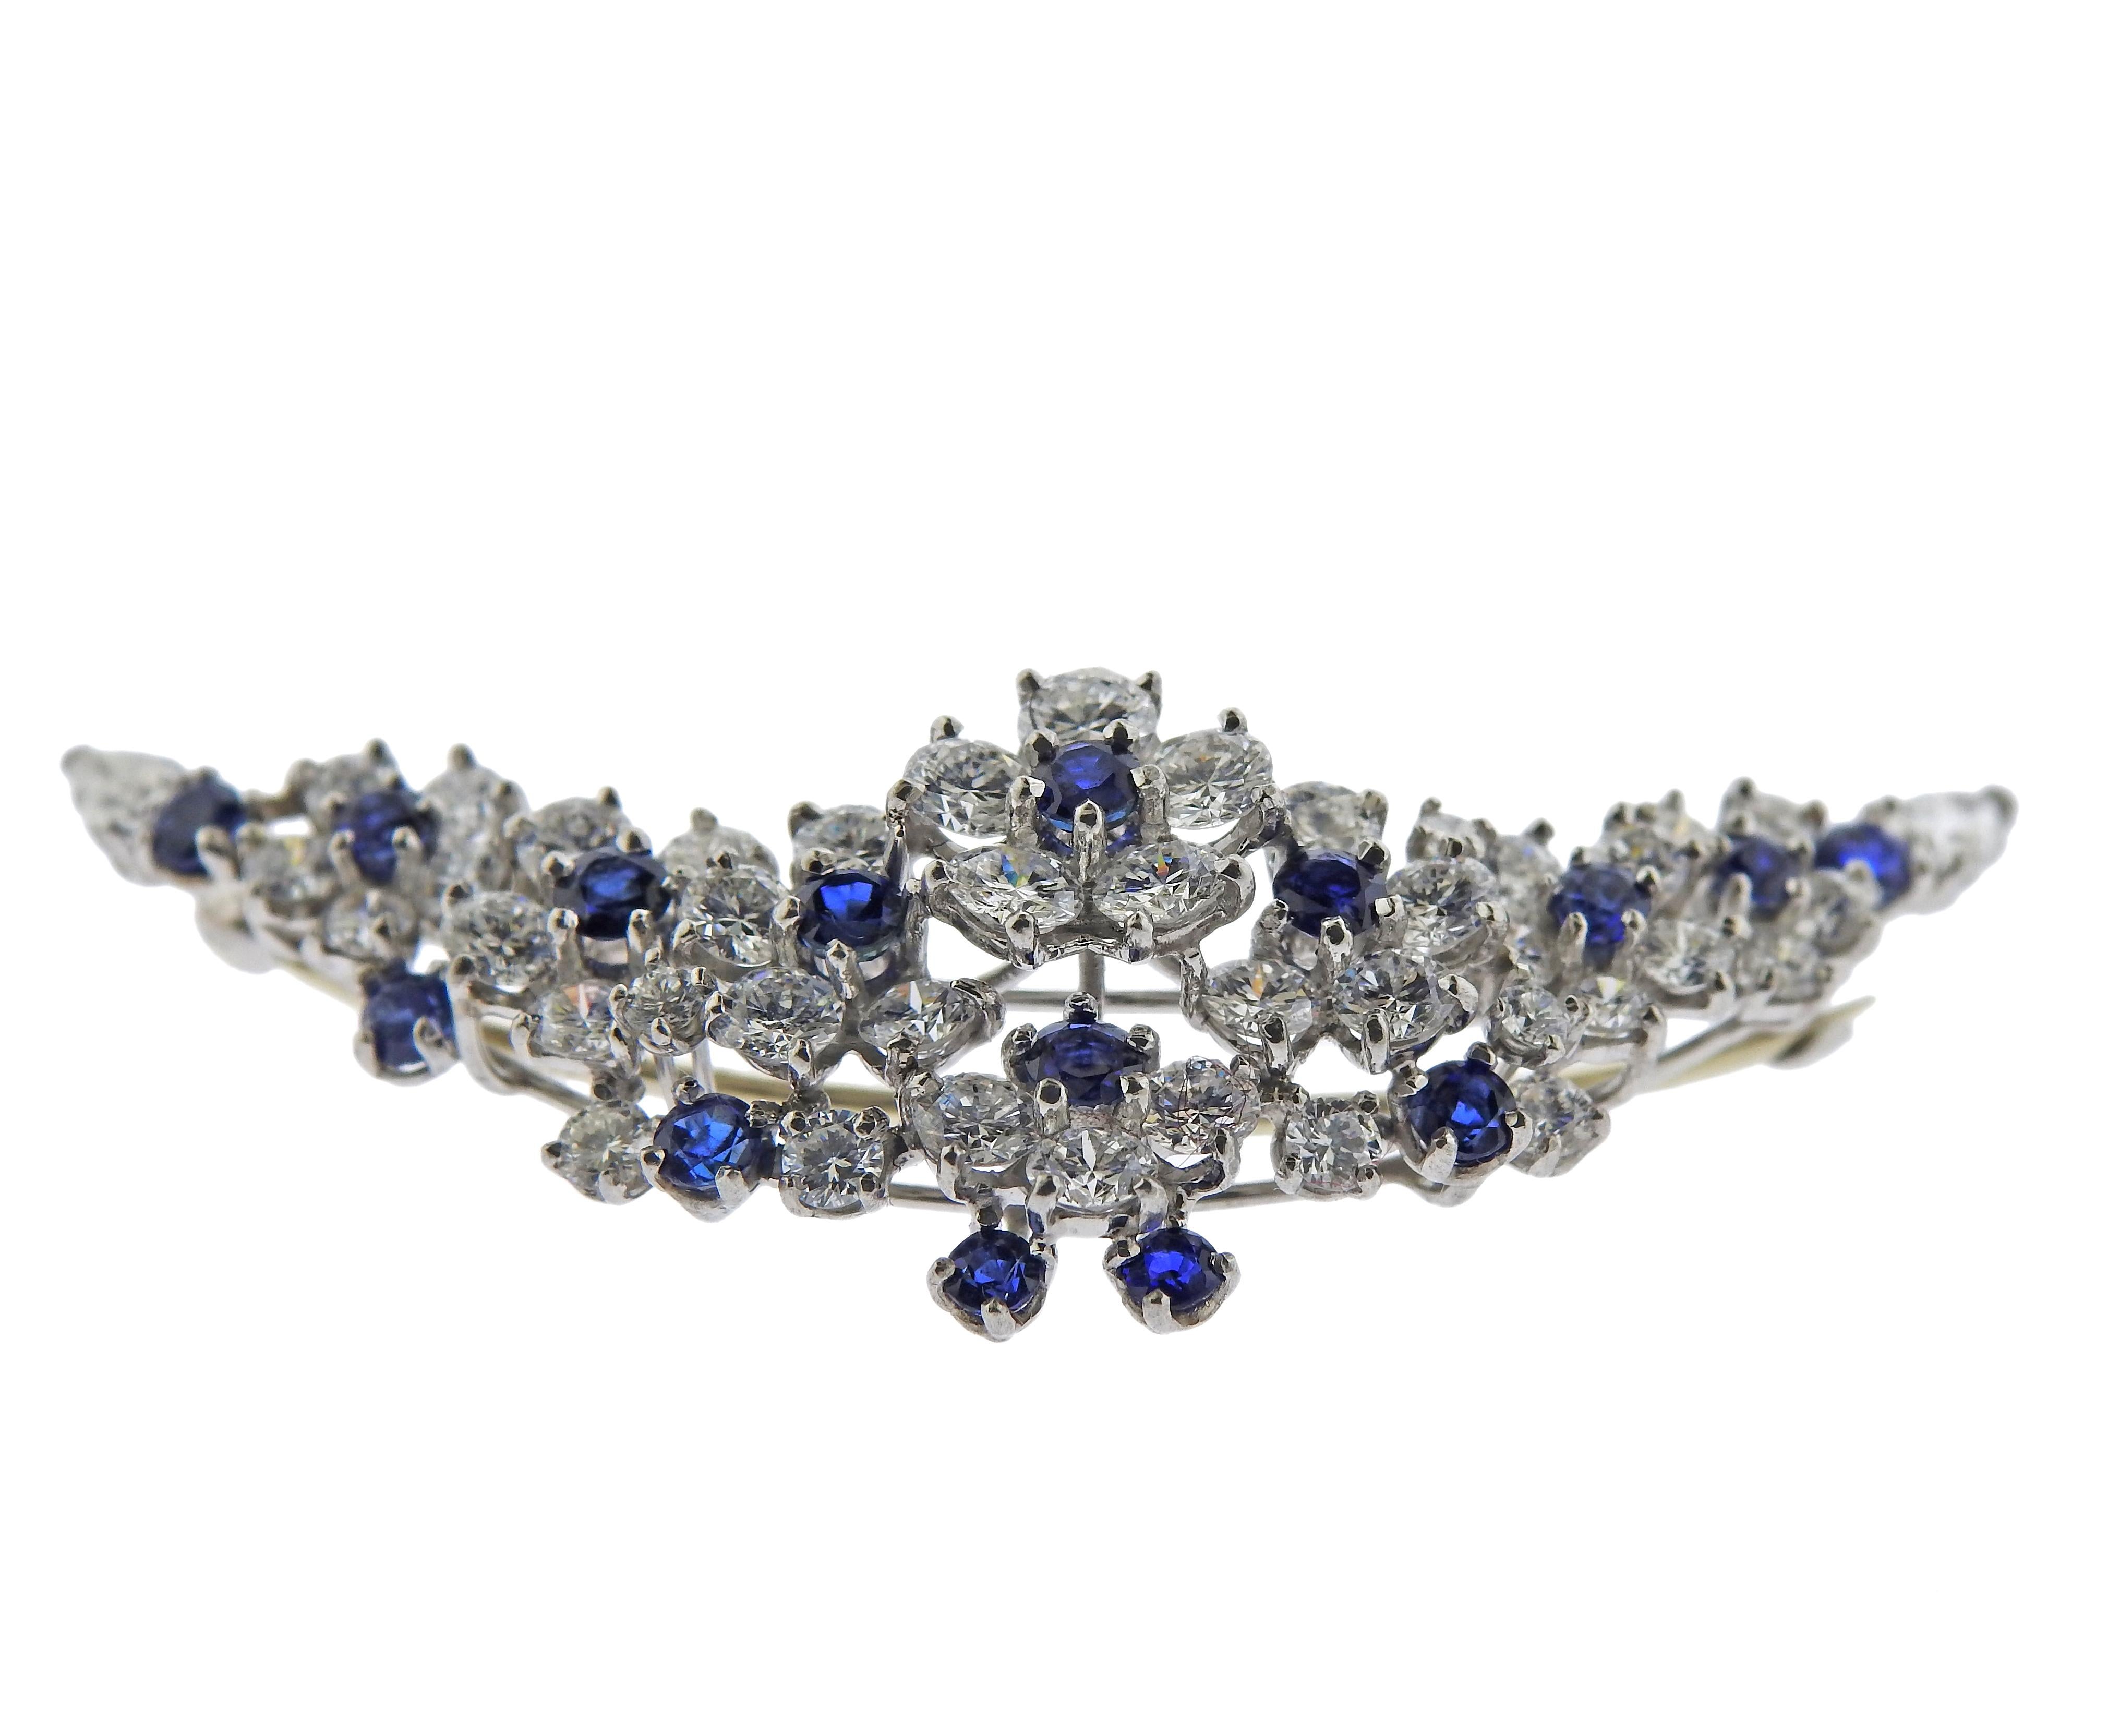 Broche florale en platine par Oscar Heyman Bros, avec des saphirs bleus et environ 4,50ctw en diamants. La broche mesure 2.25